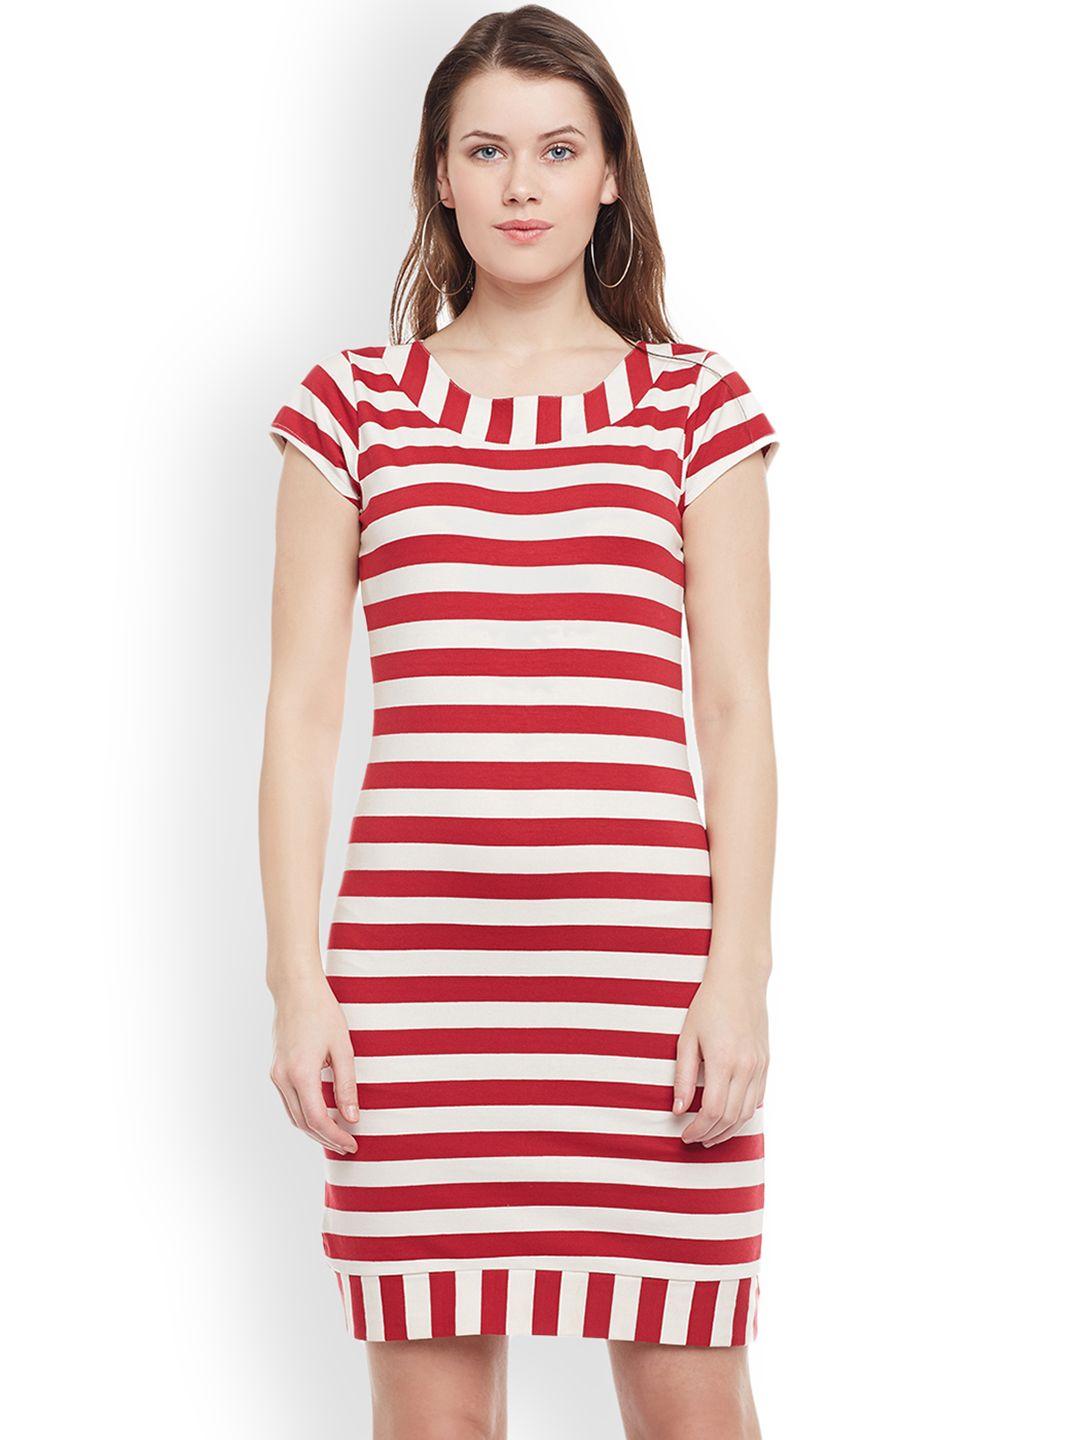 wisstler-women-red-striped-sheath-dress